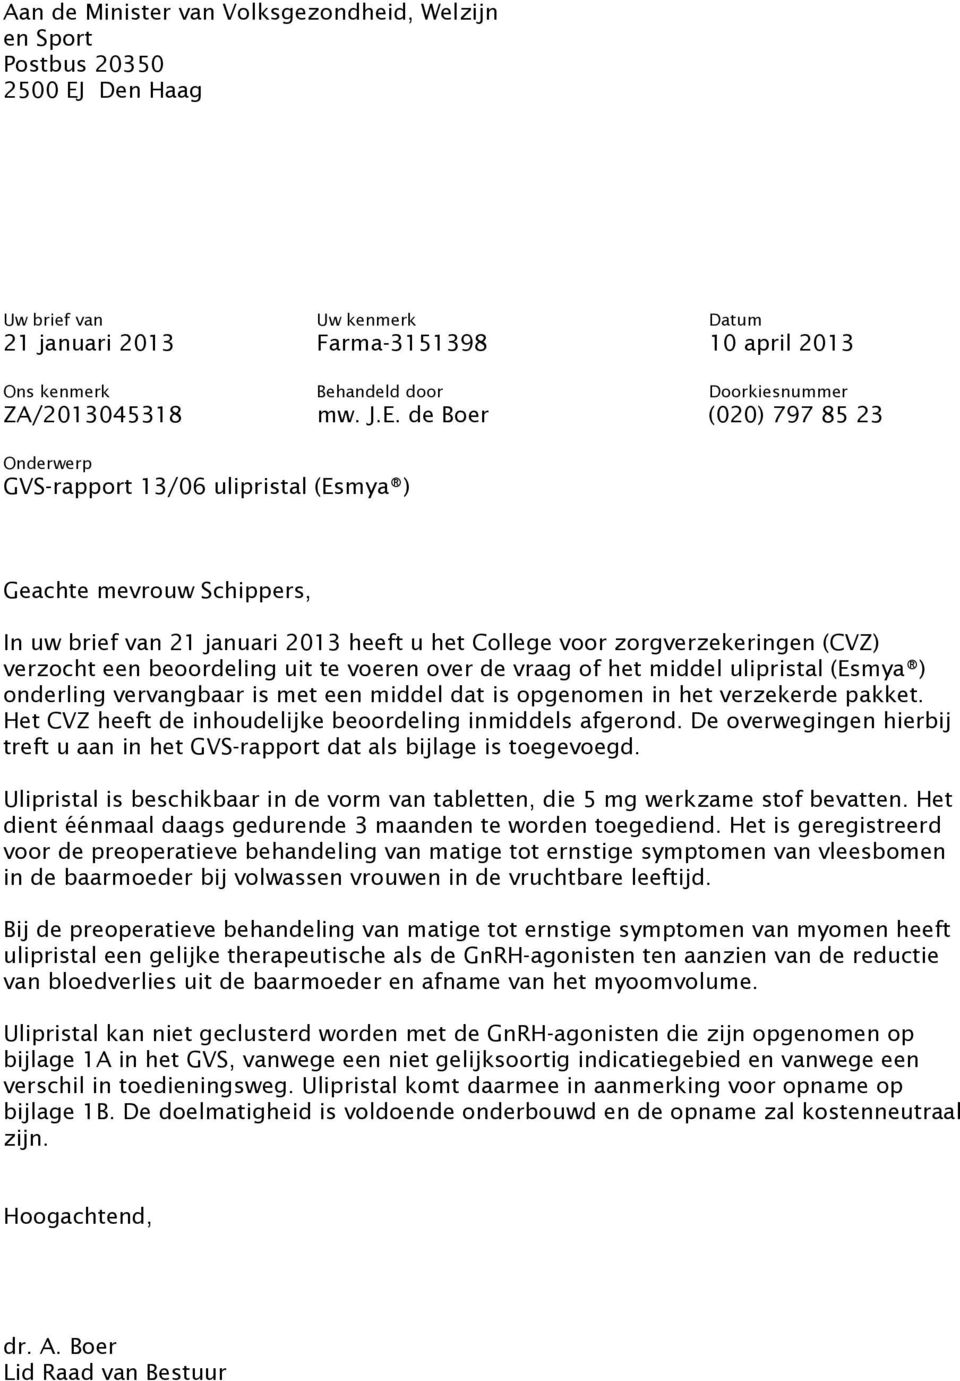 de Boer (020) 797 85 23 Onderwerp GVS-rapport 13/06 ulipristal (Esmya ) Geachte mevrouw Schippers, In uw brief van 21 januari 2013 heeft u het College voor zorgverzekeringen (CVZ) verzocht een